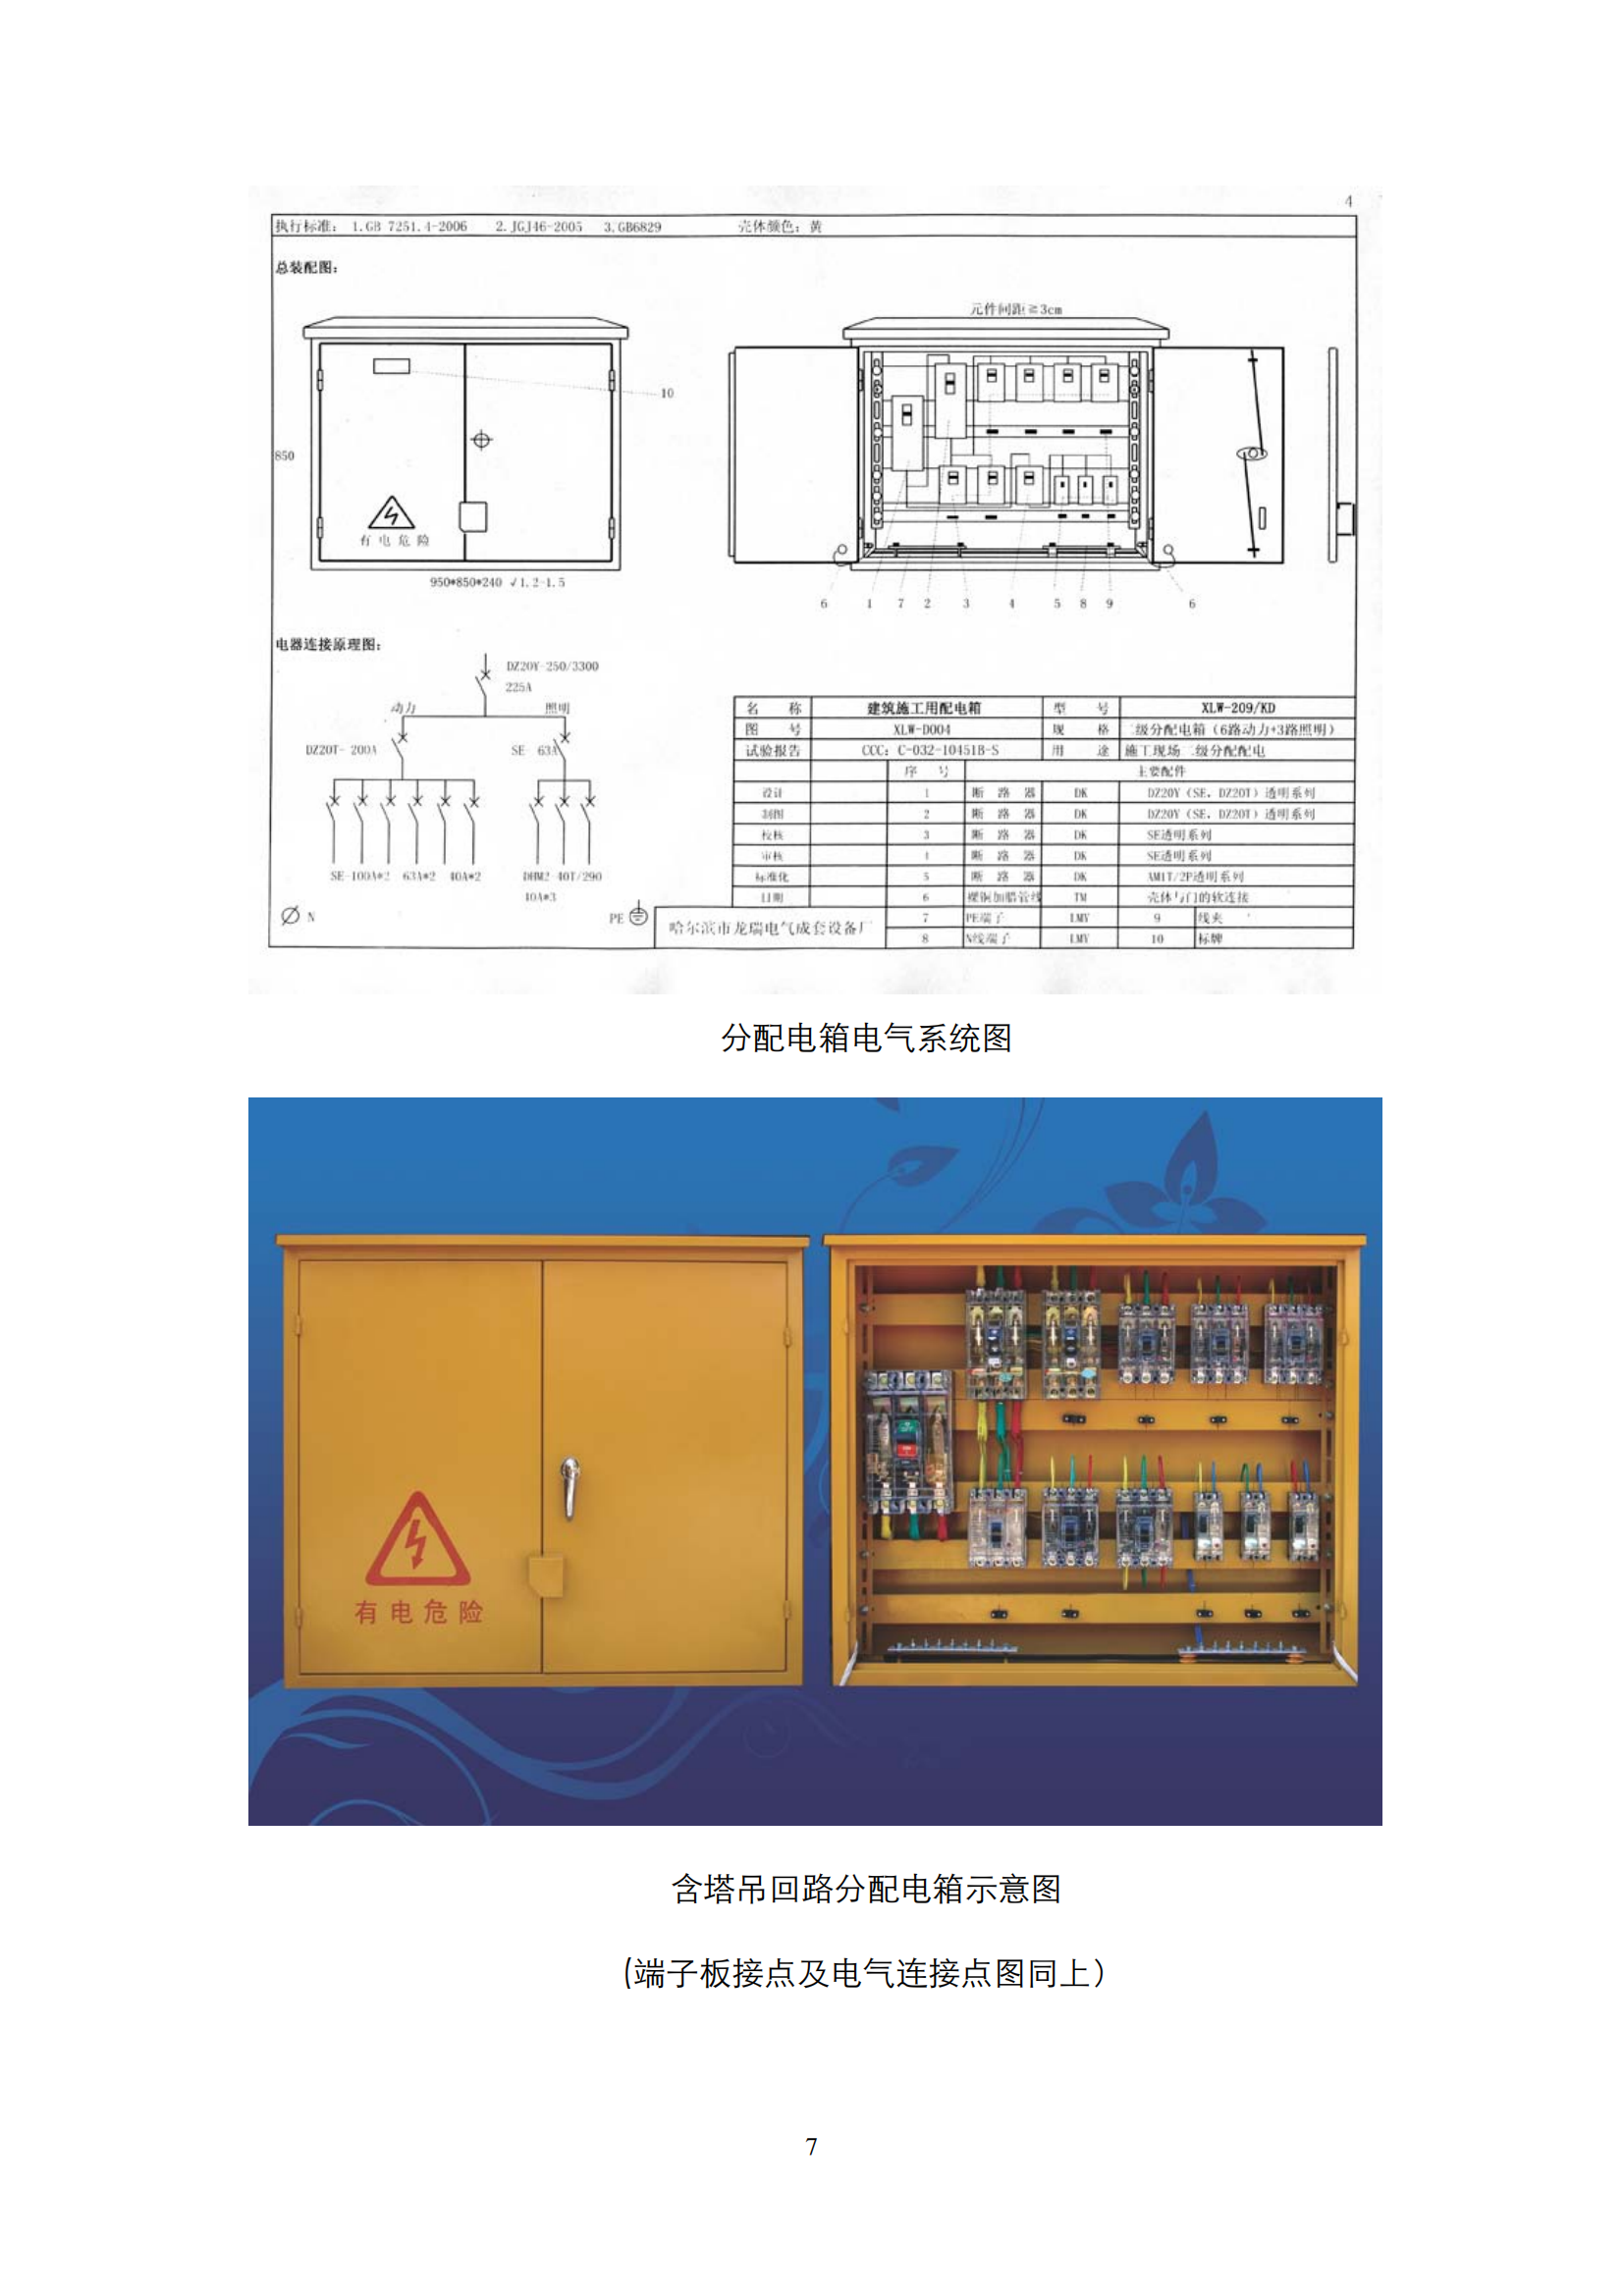 施工现场临时用电配电箱标准化配置图集插图(7)